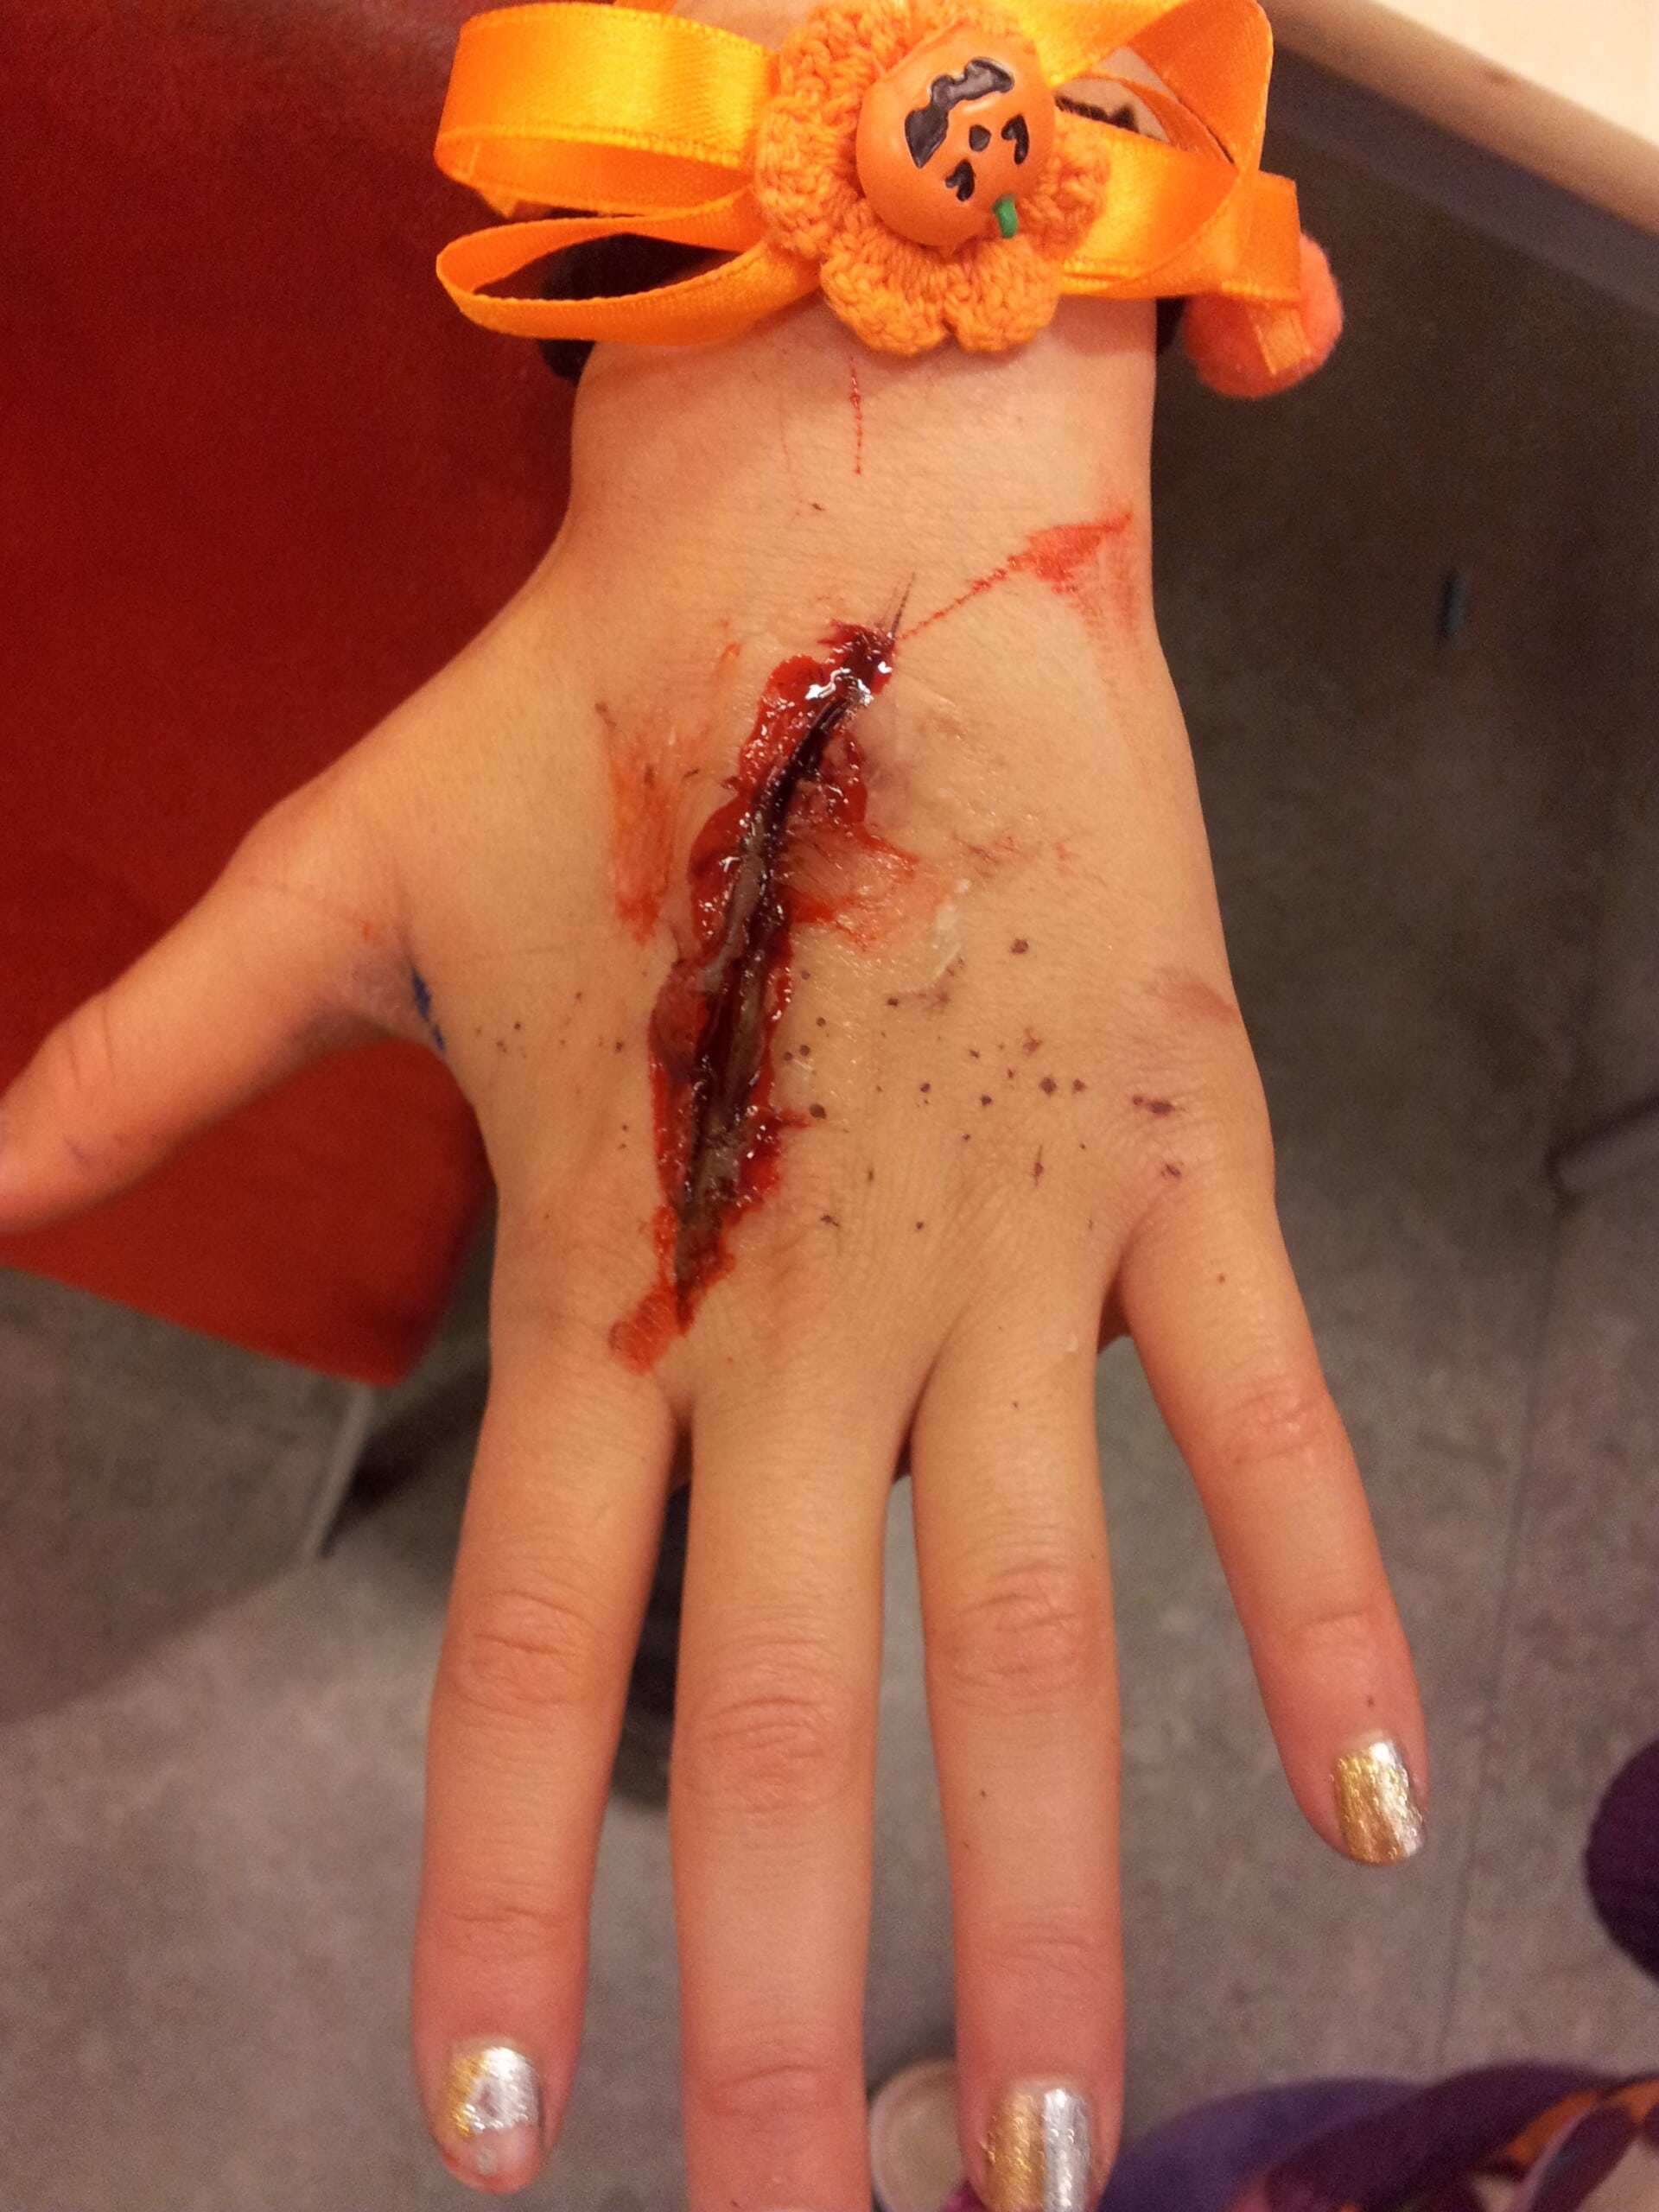 when to get stitches hand, wound, blood